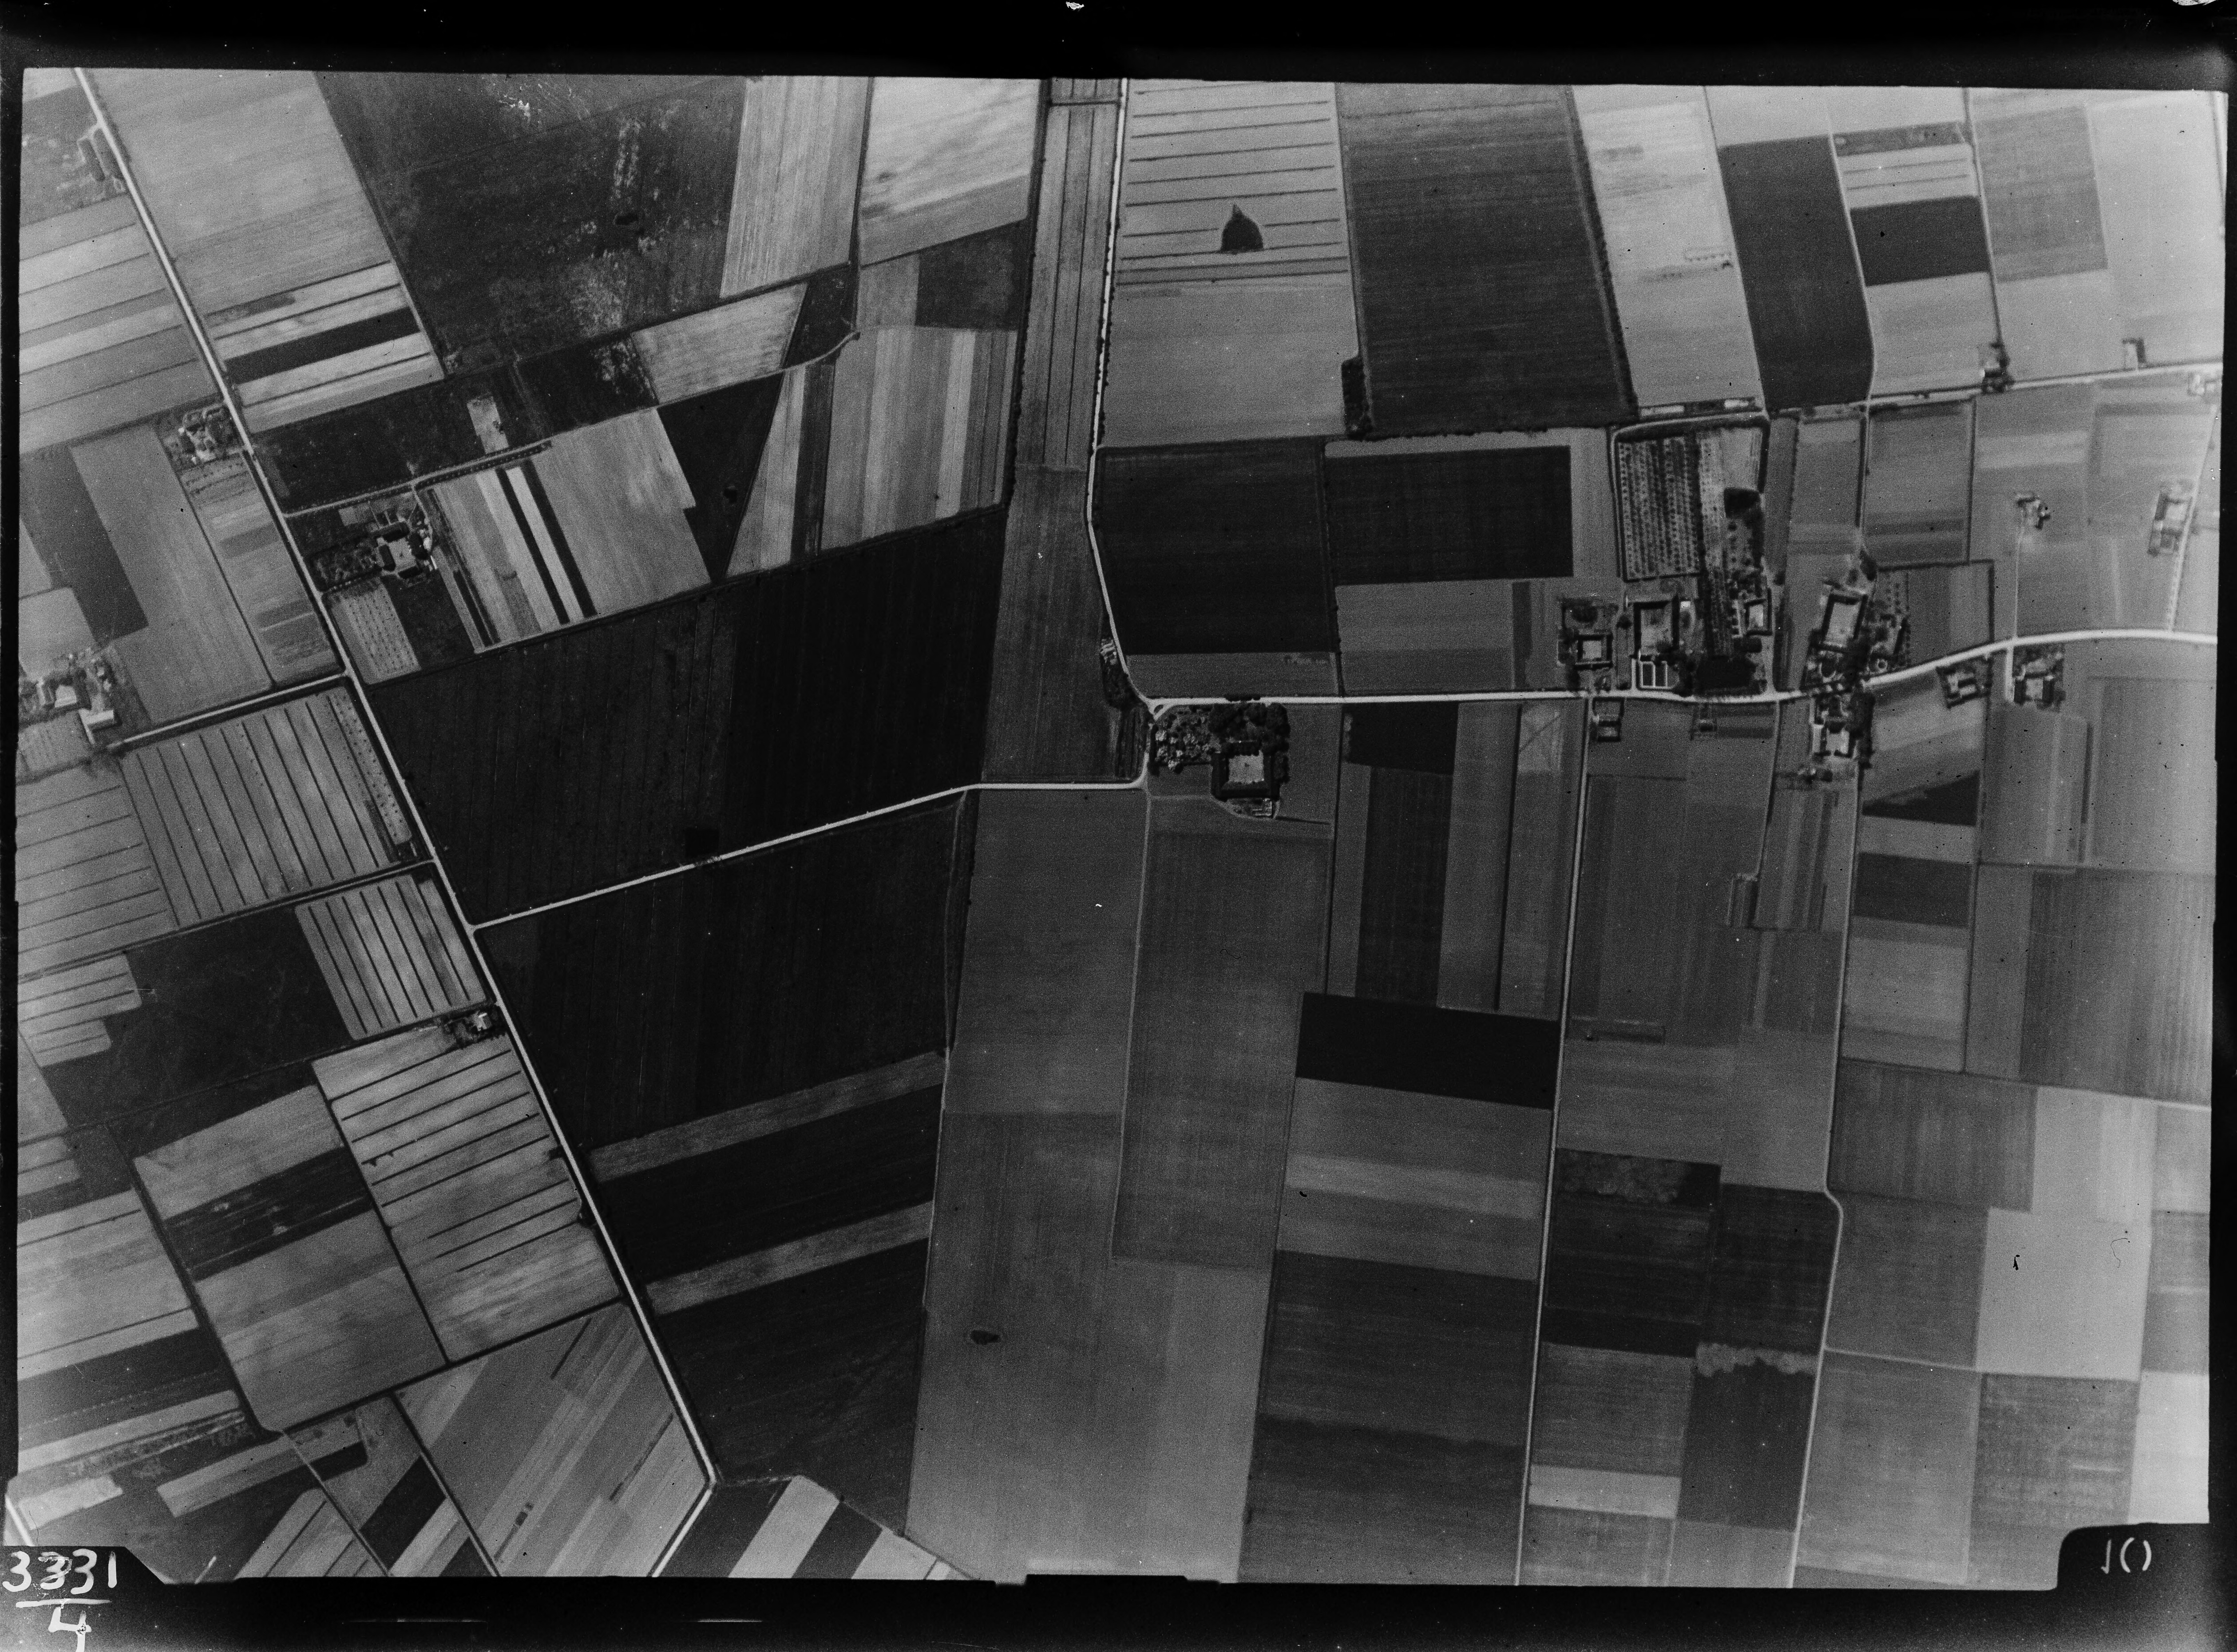 Lodfoto fra 1926 taget 604 meter fra Vipstjertevej 8